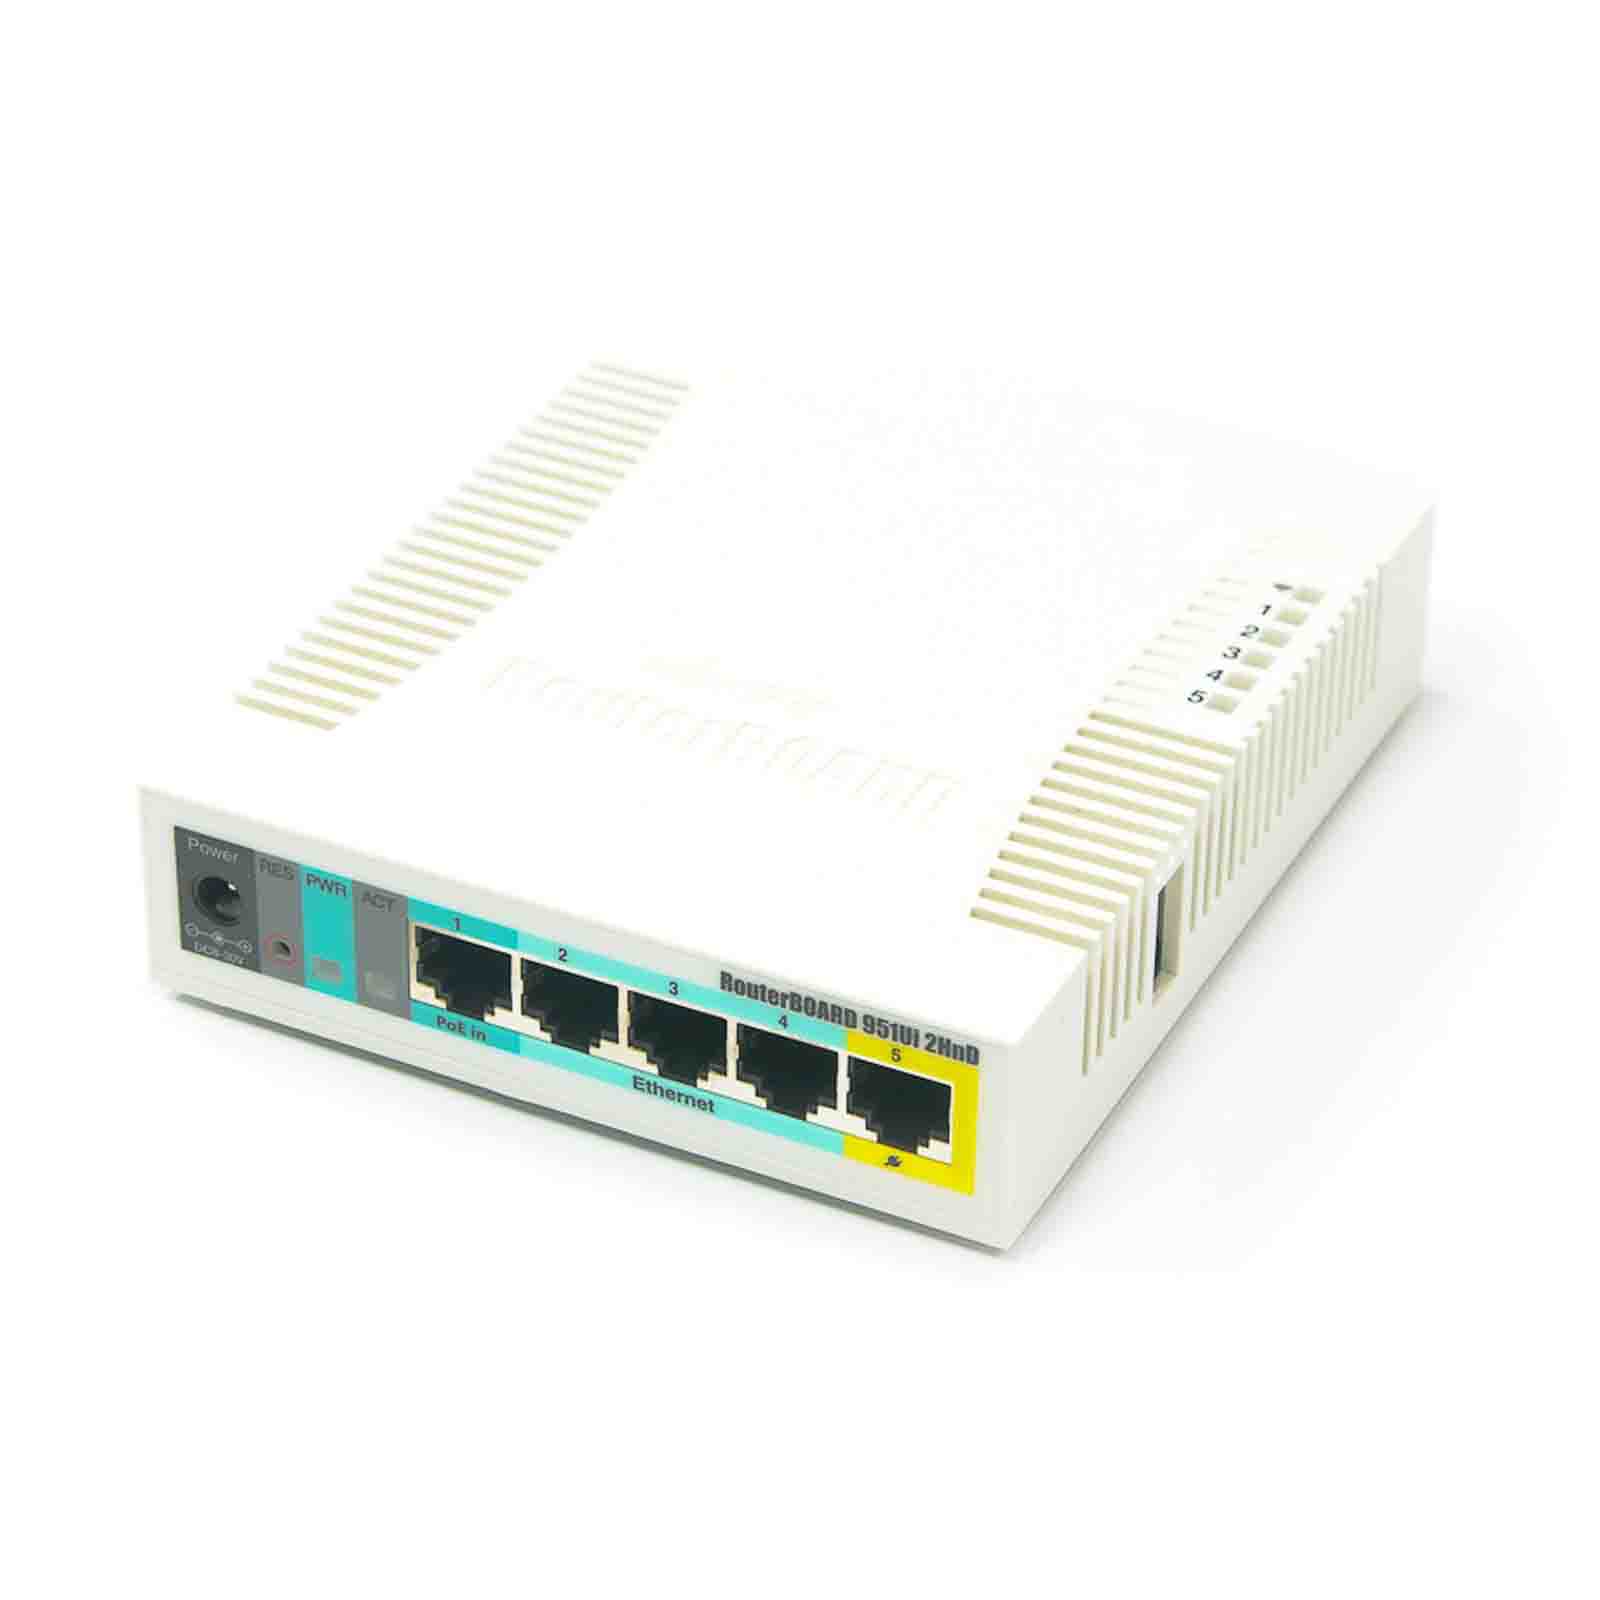 Router RB951Ui-2HnD Mikrotik